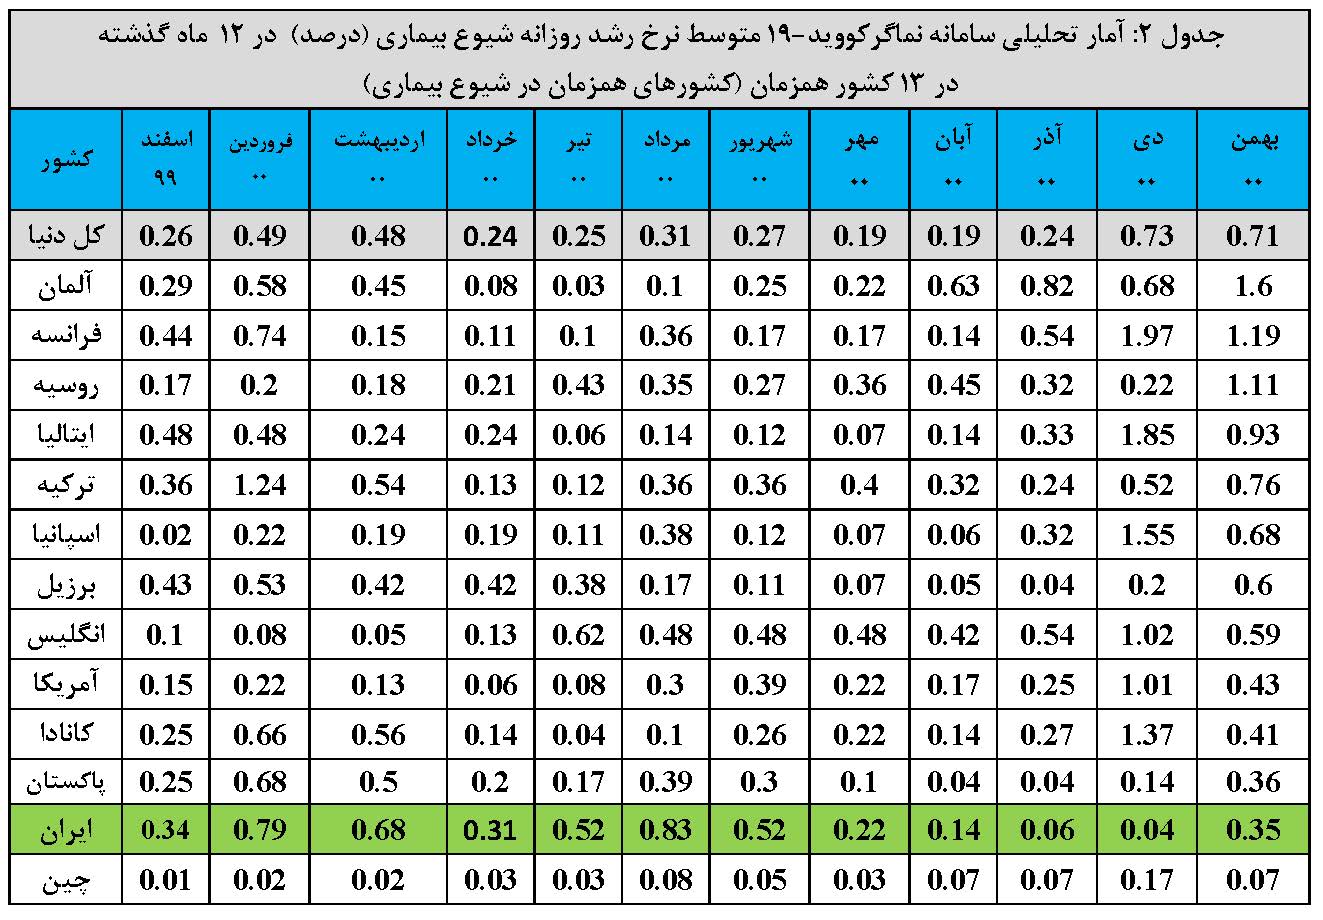 گزارش تحلیلی سامانه نماگر کووید-19 ISC در دنیا و ایران-بهمن 1400